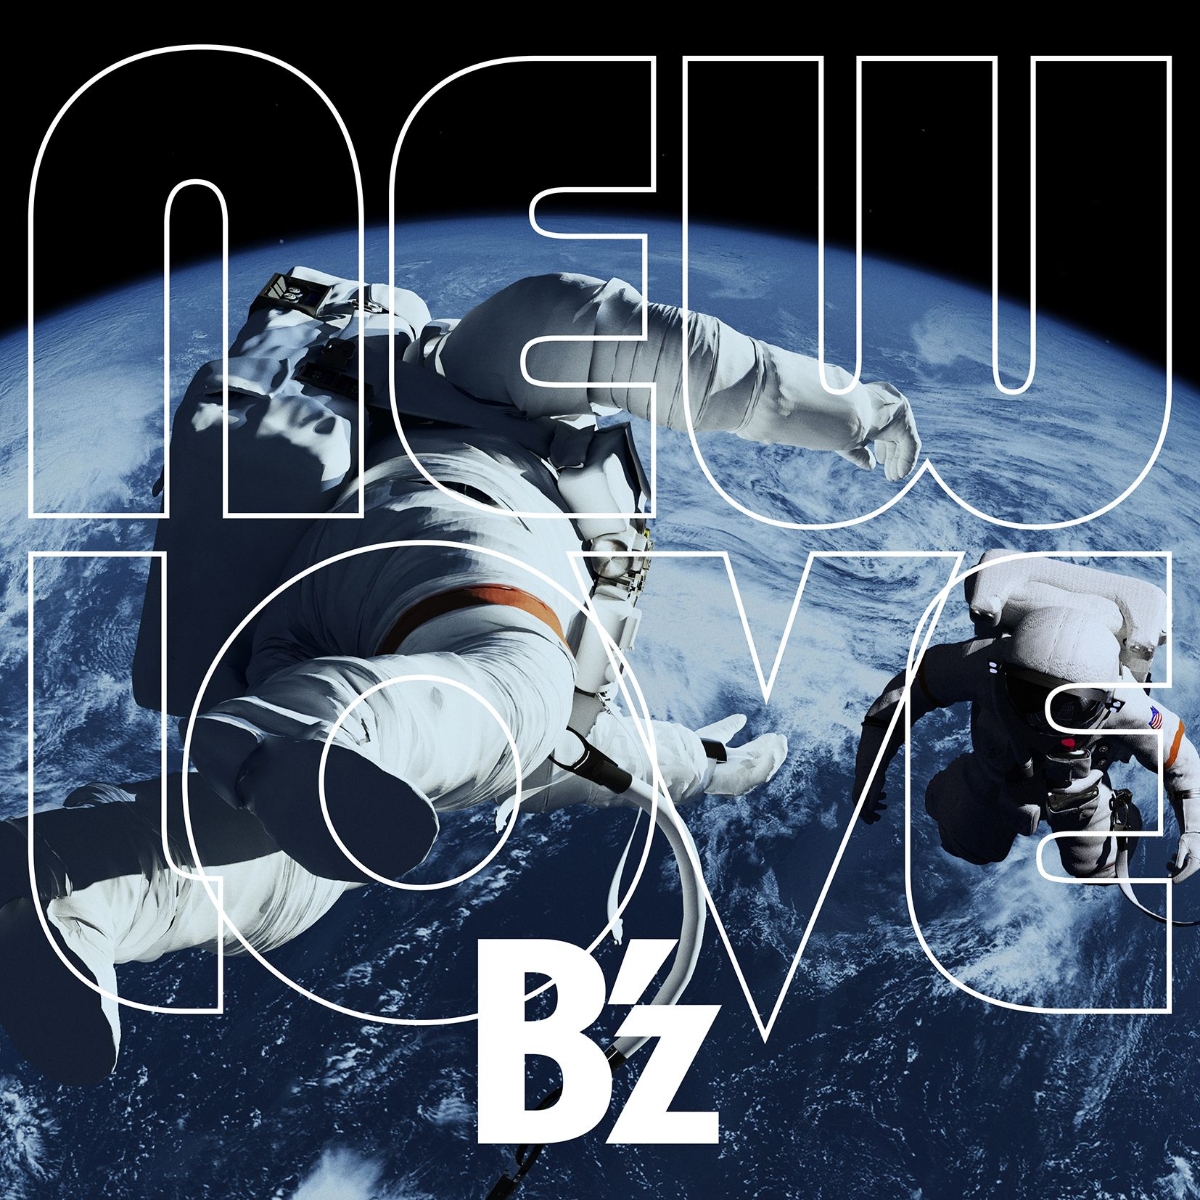 楽天ブックス New Love アナログ盤 B Z 4560109088089 Cd